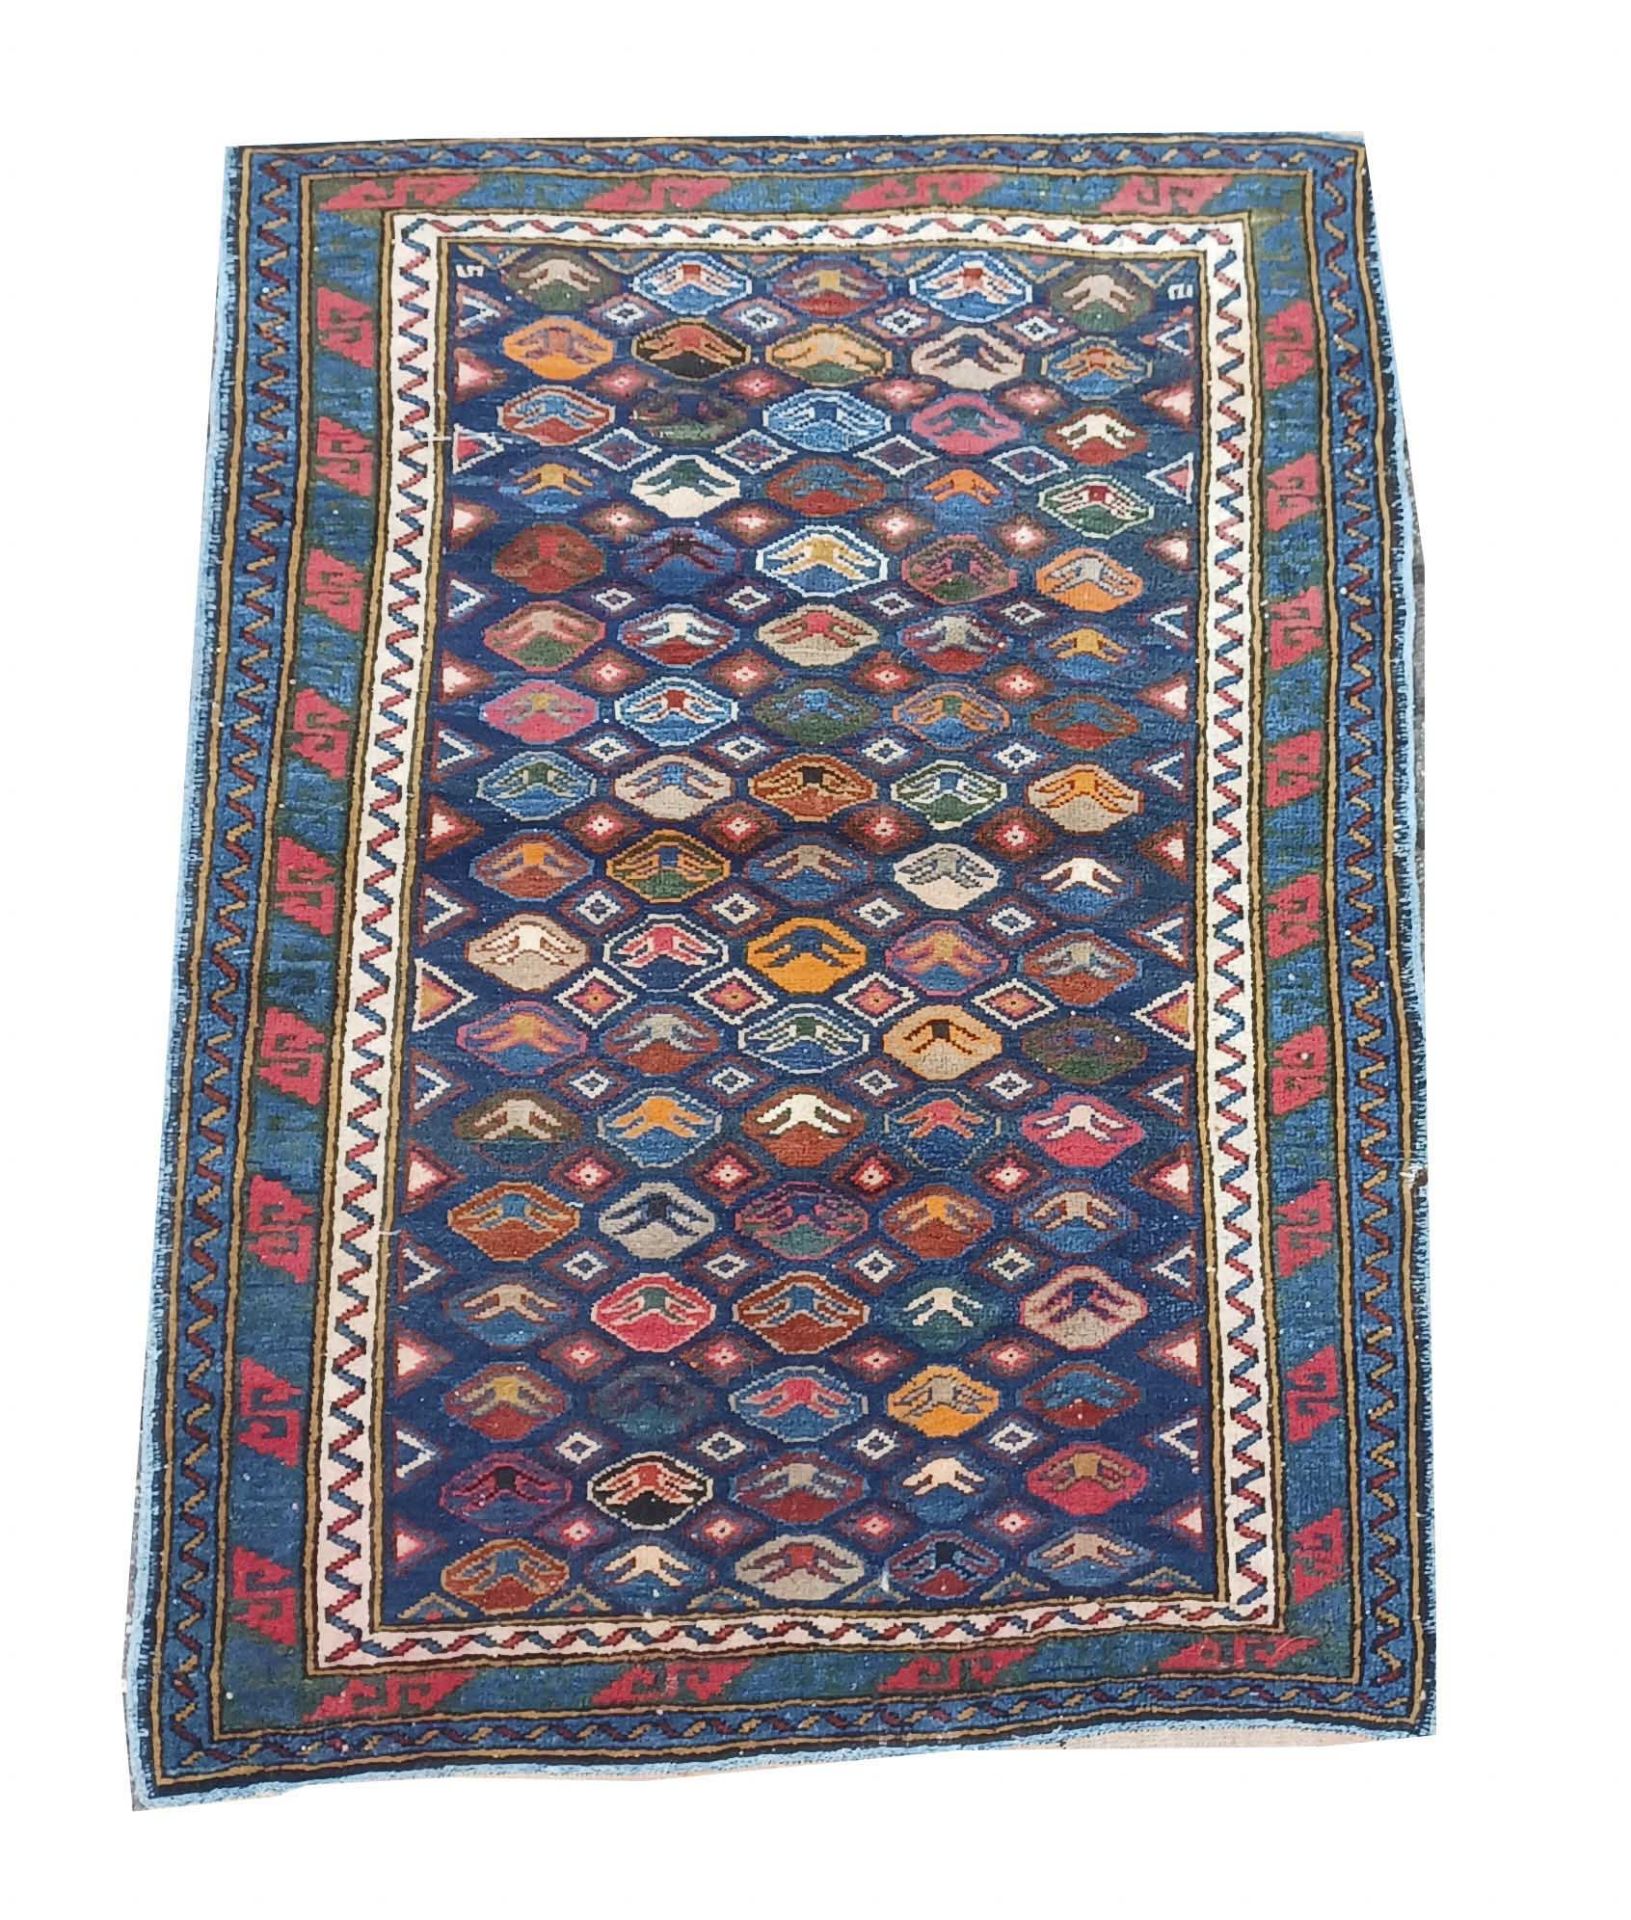 Carpet, Rug, Caucasus. Even pile, worn edges, short fringes, 121 x 86 cm